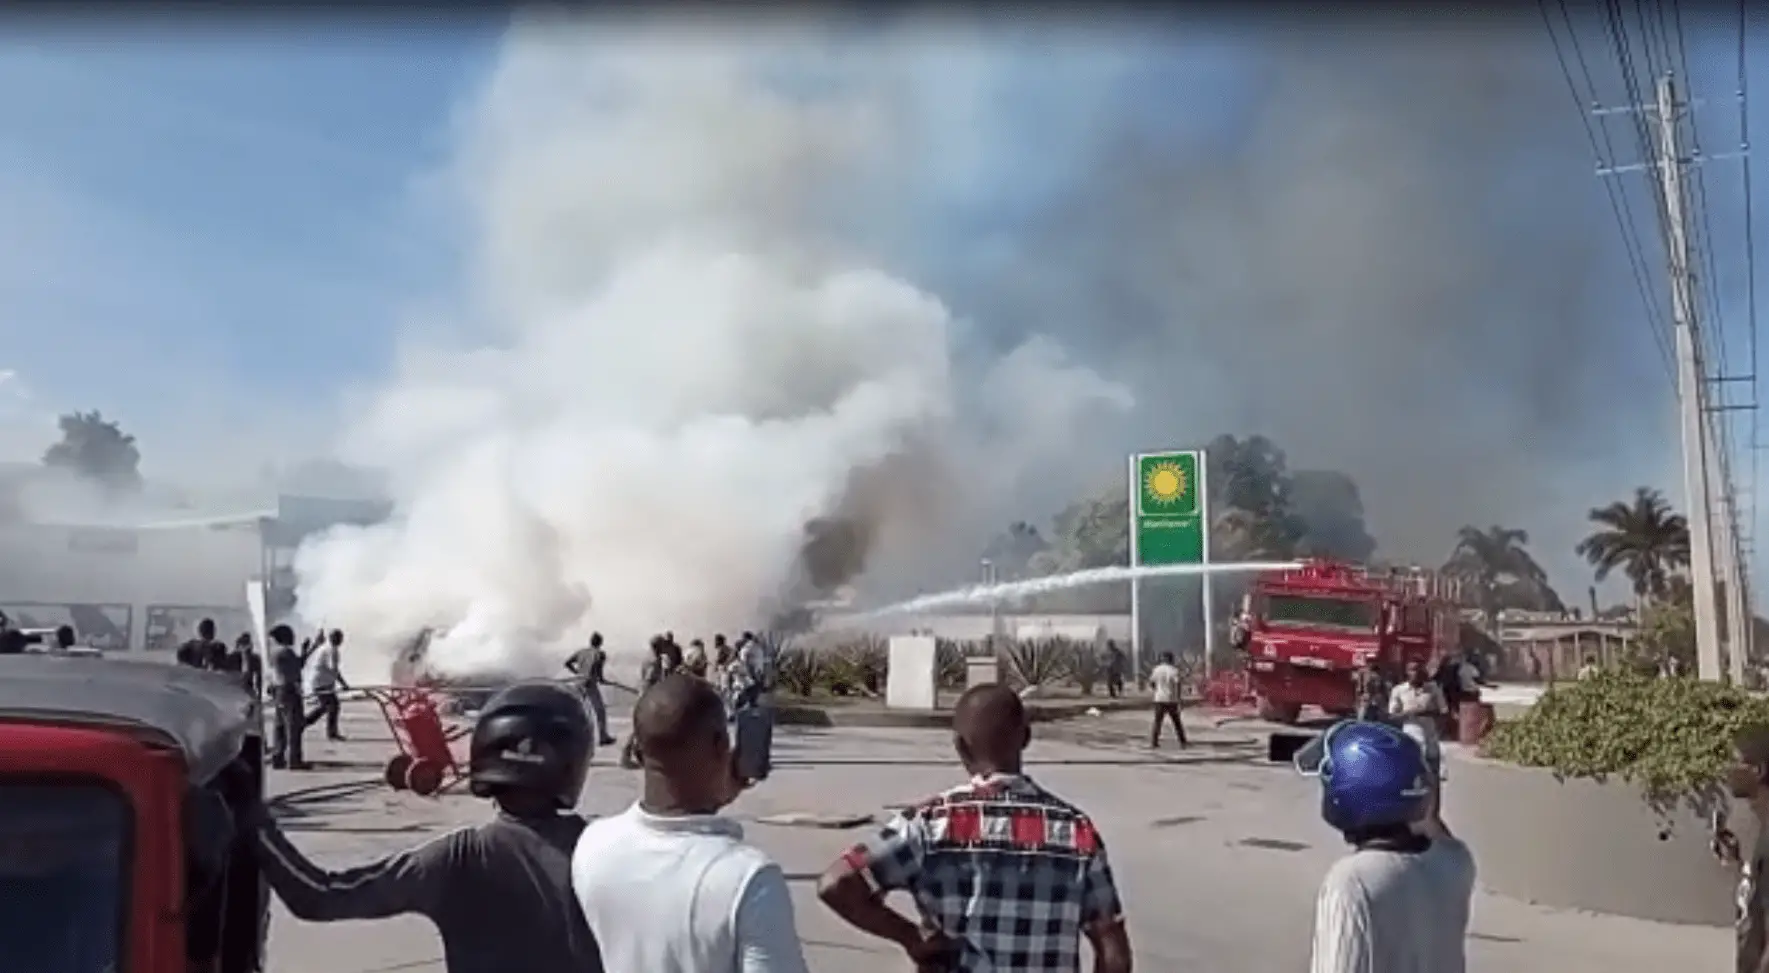 Incendie dans une station d'essence près de l'aéroport Toussaint Louverture